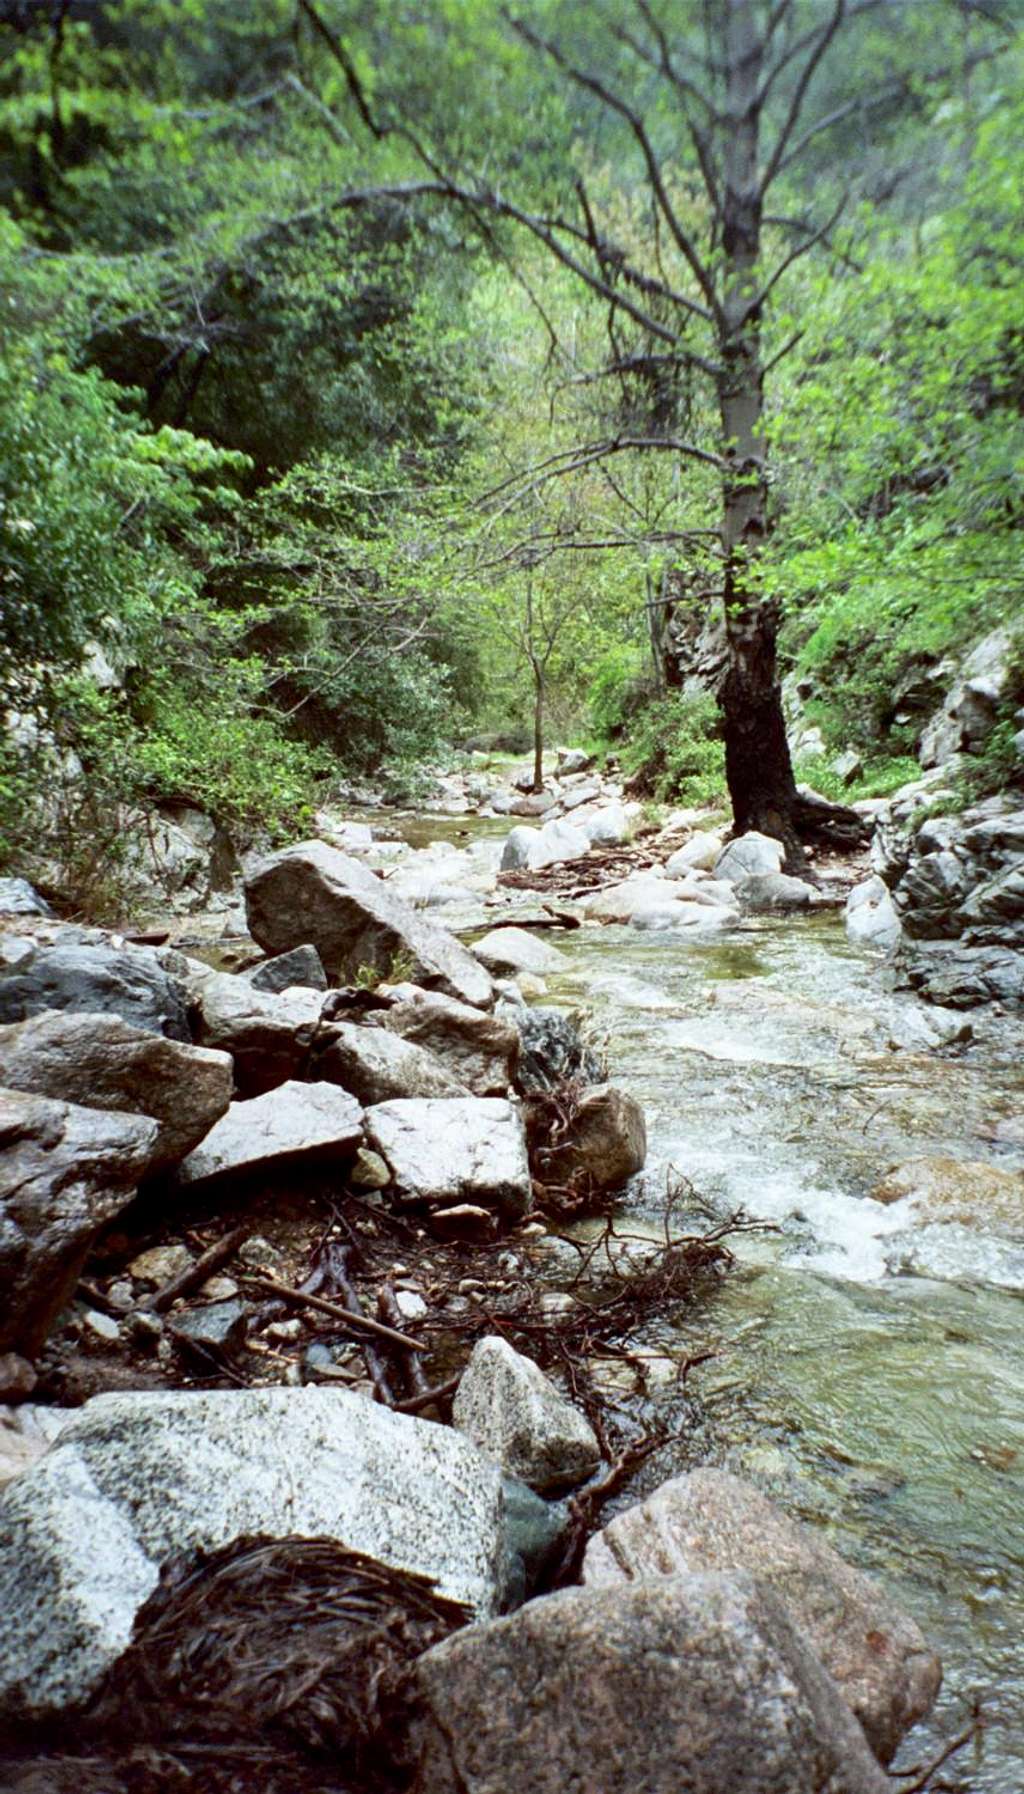 Millard Creek below Falls